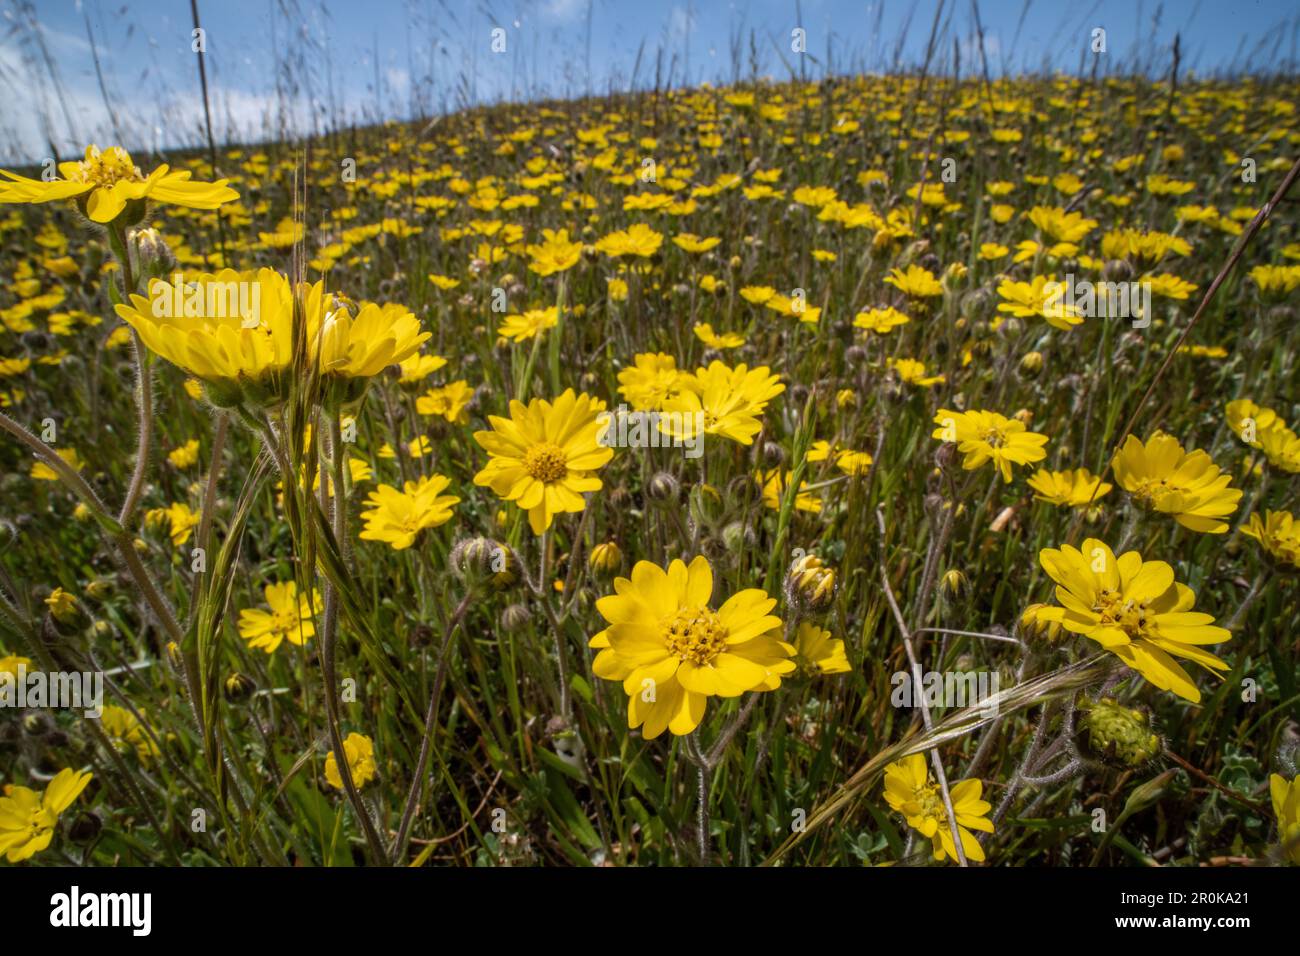 Floraison Hemizonia congeste - Hayfield Tarweed dans un champ en Californie, les fleurs sauvages jaunes couvrent les collines au printemps. Banque D'Images